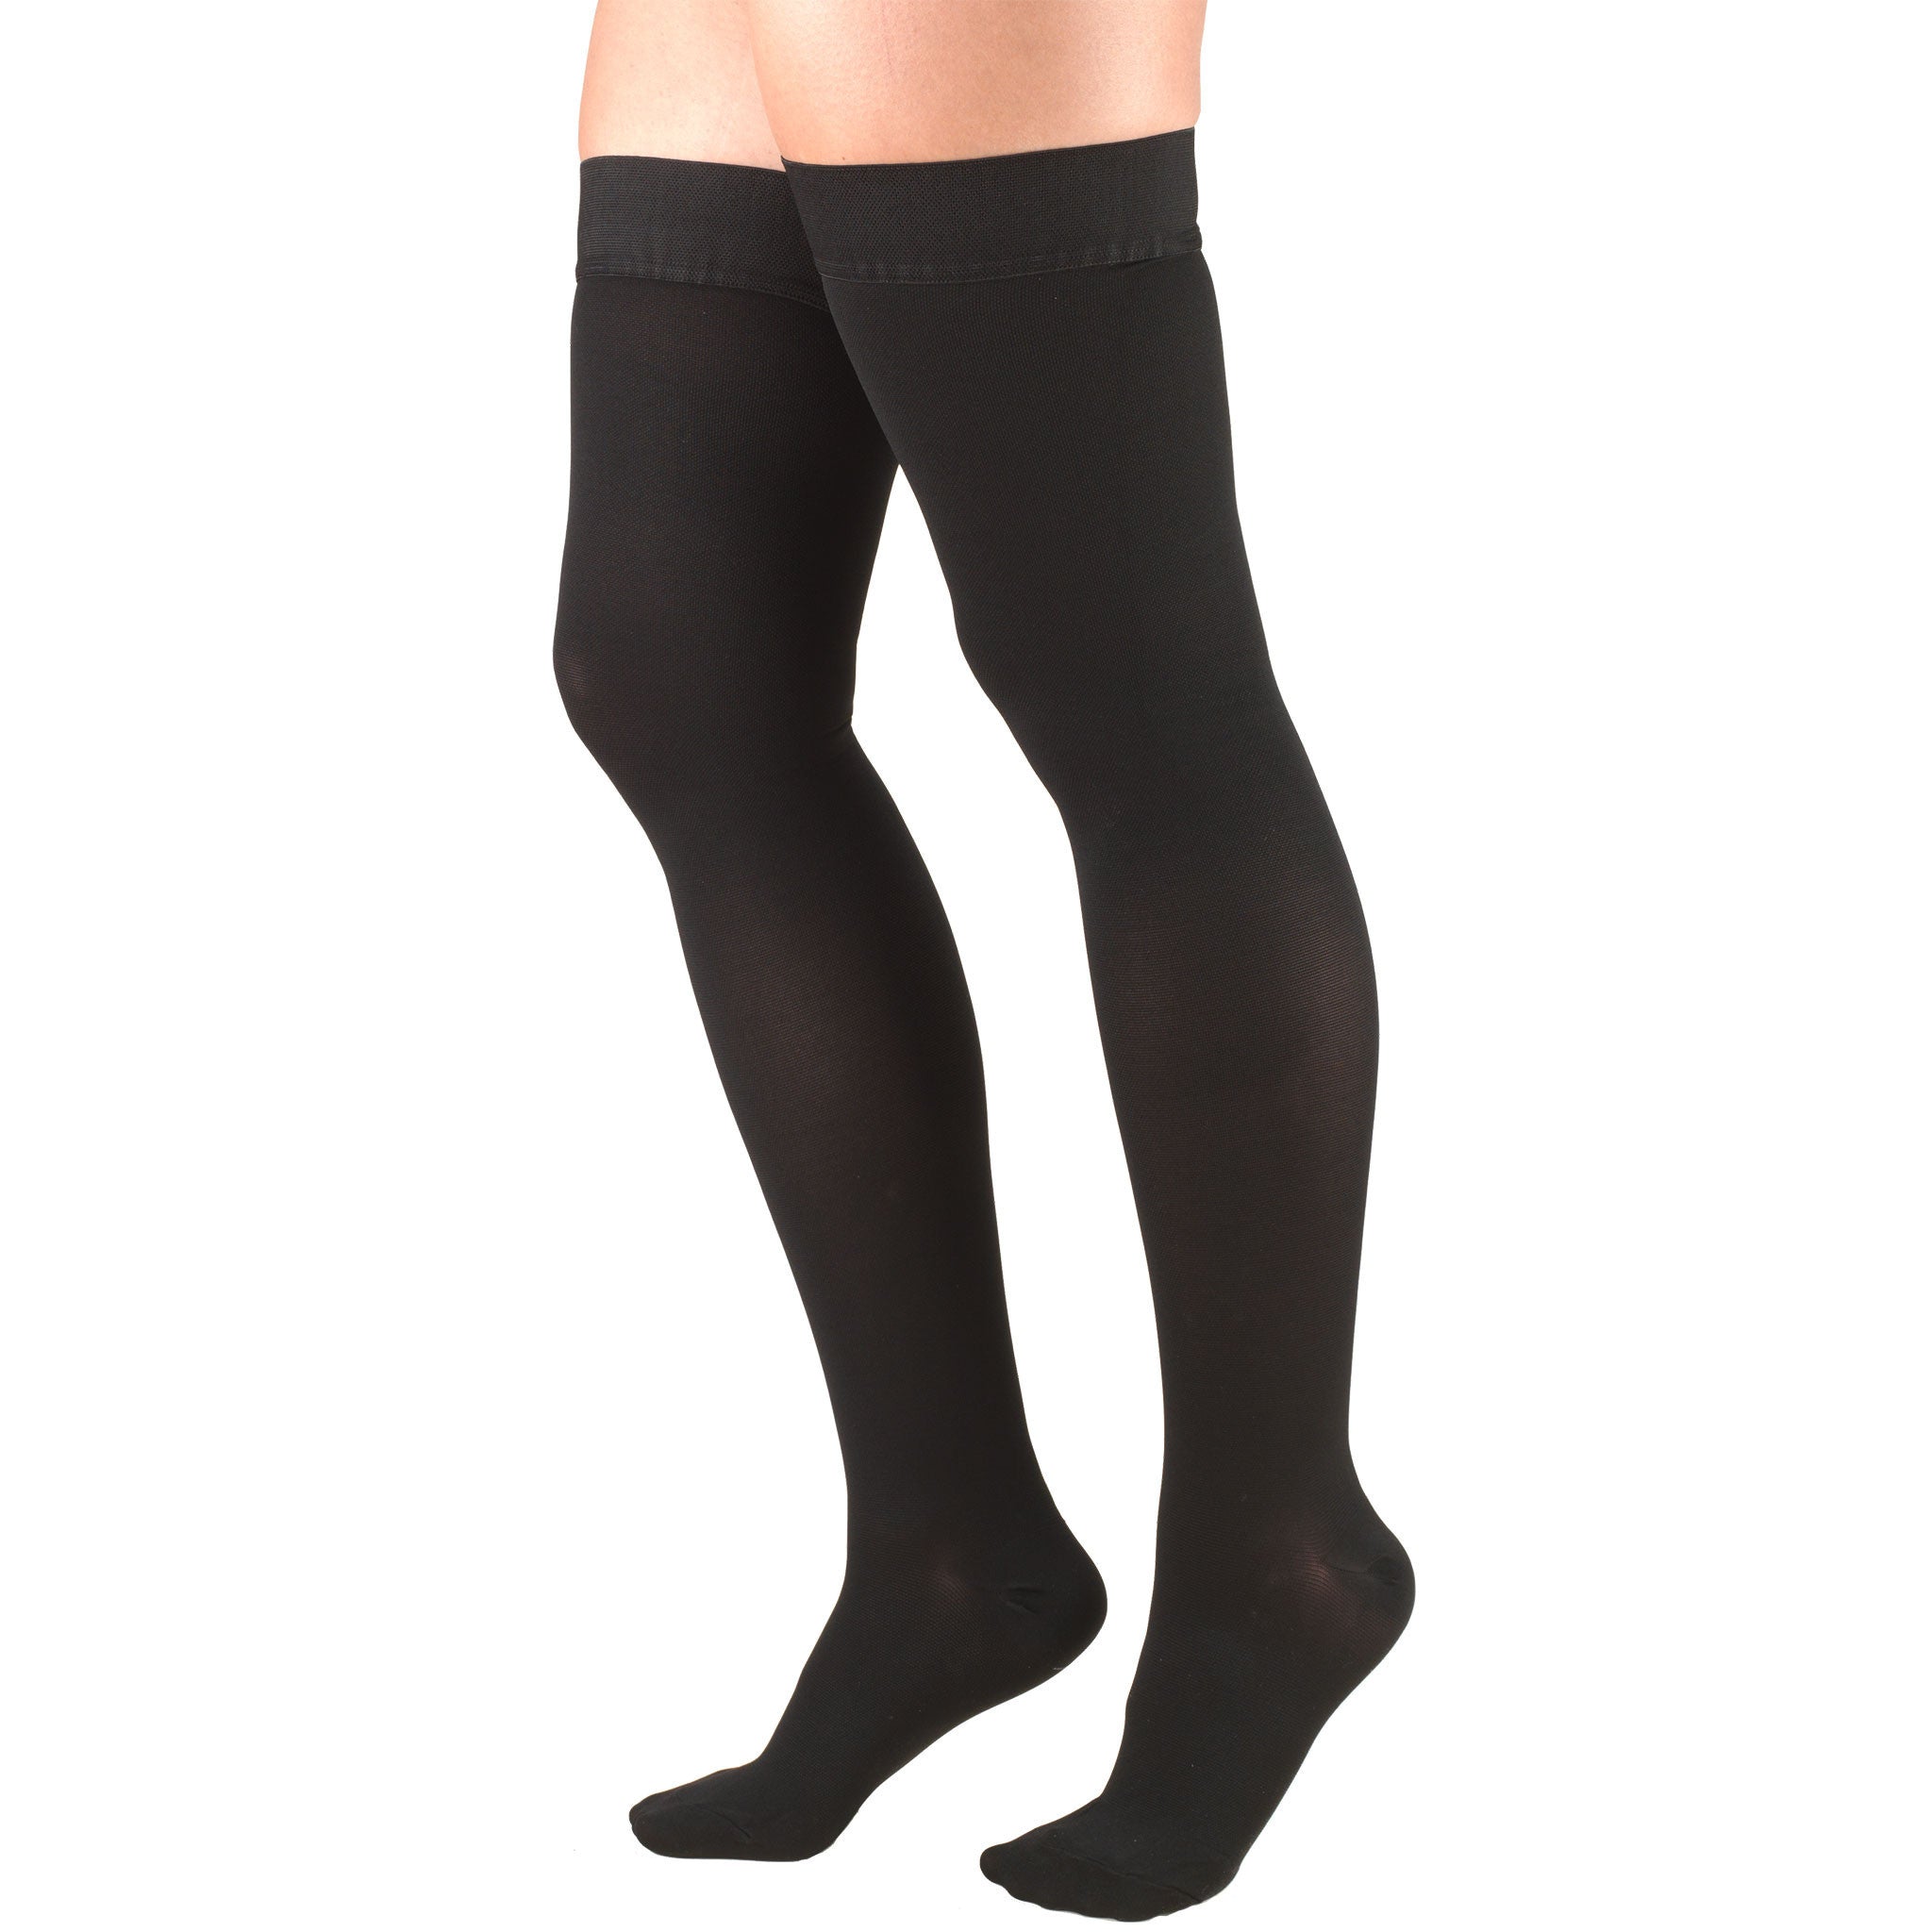 Truform Women's Stockings, Knee High, Sheer: 30-40 mmHg, Black, X-Large 